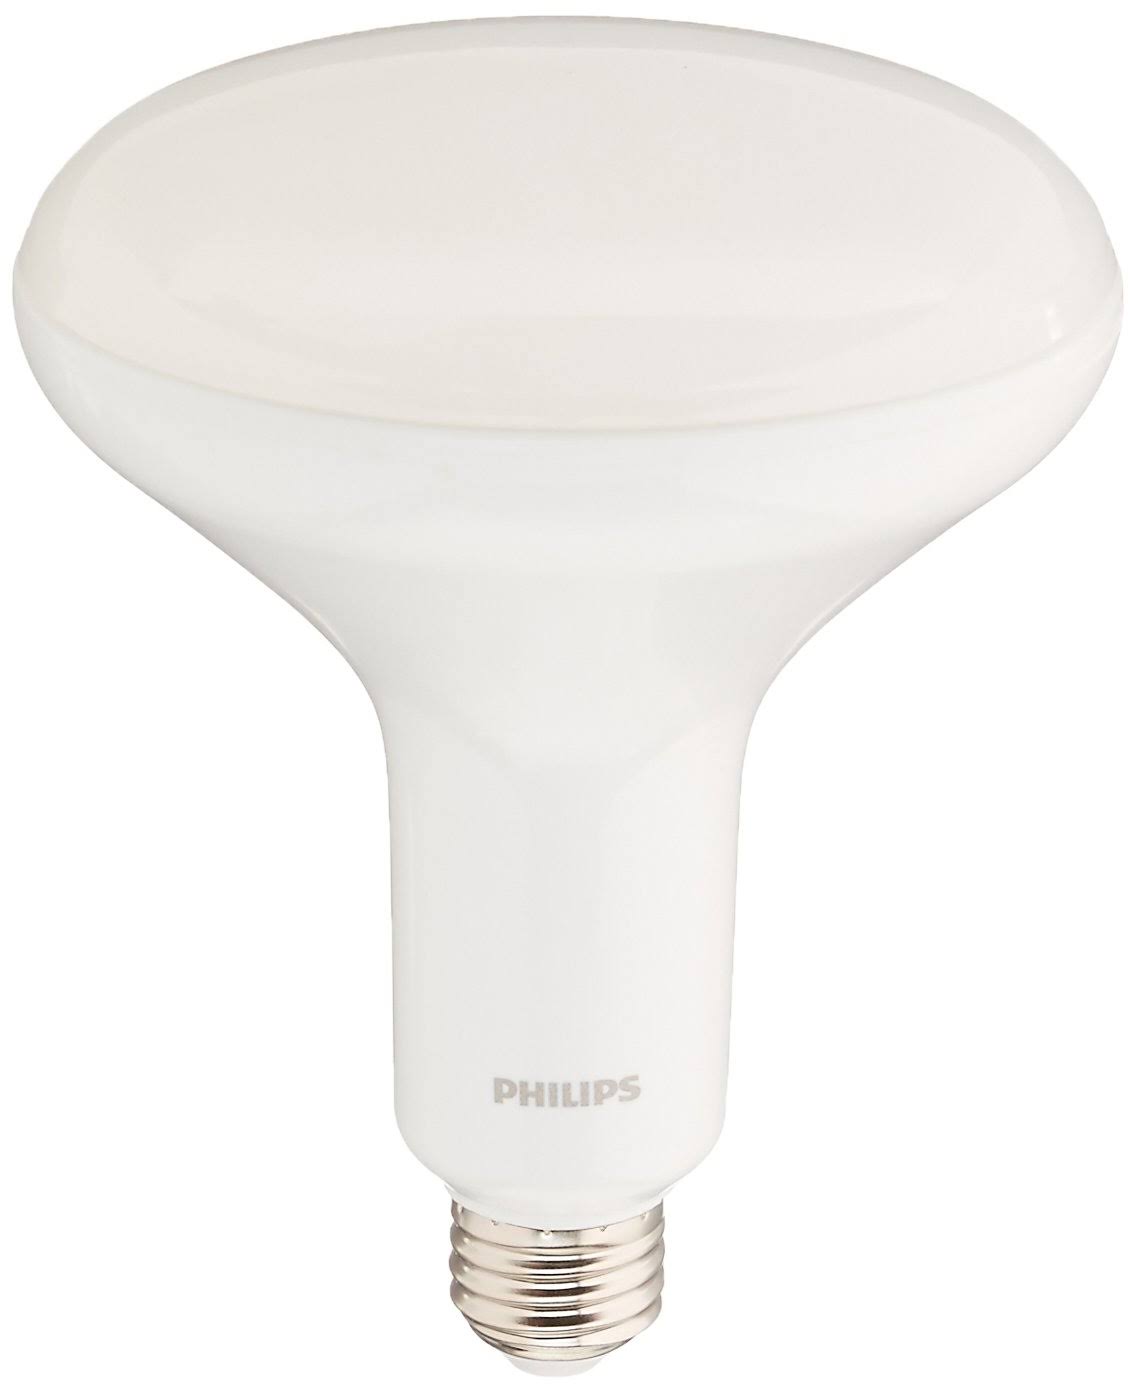 Philips Led Dimmable Flood Light Bulb - BR40, Soft White, 9W, 120V